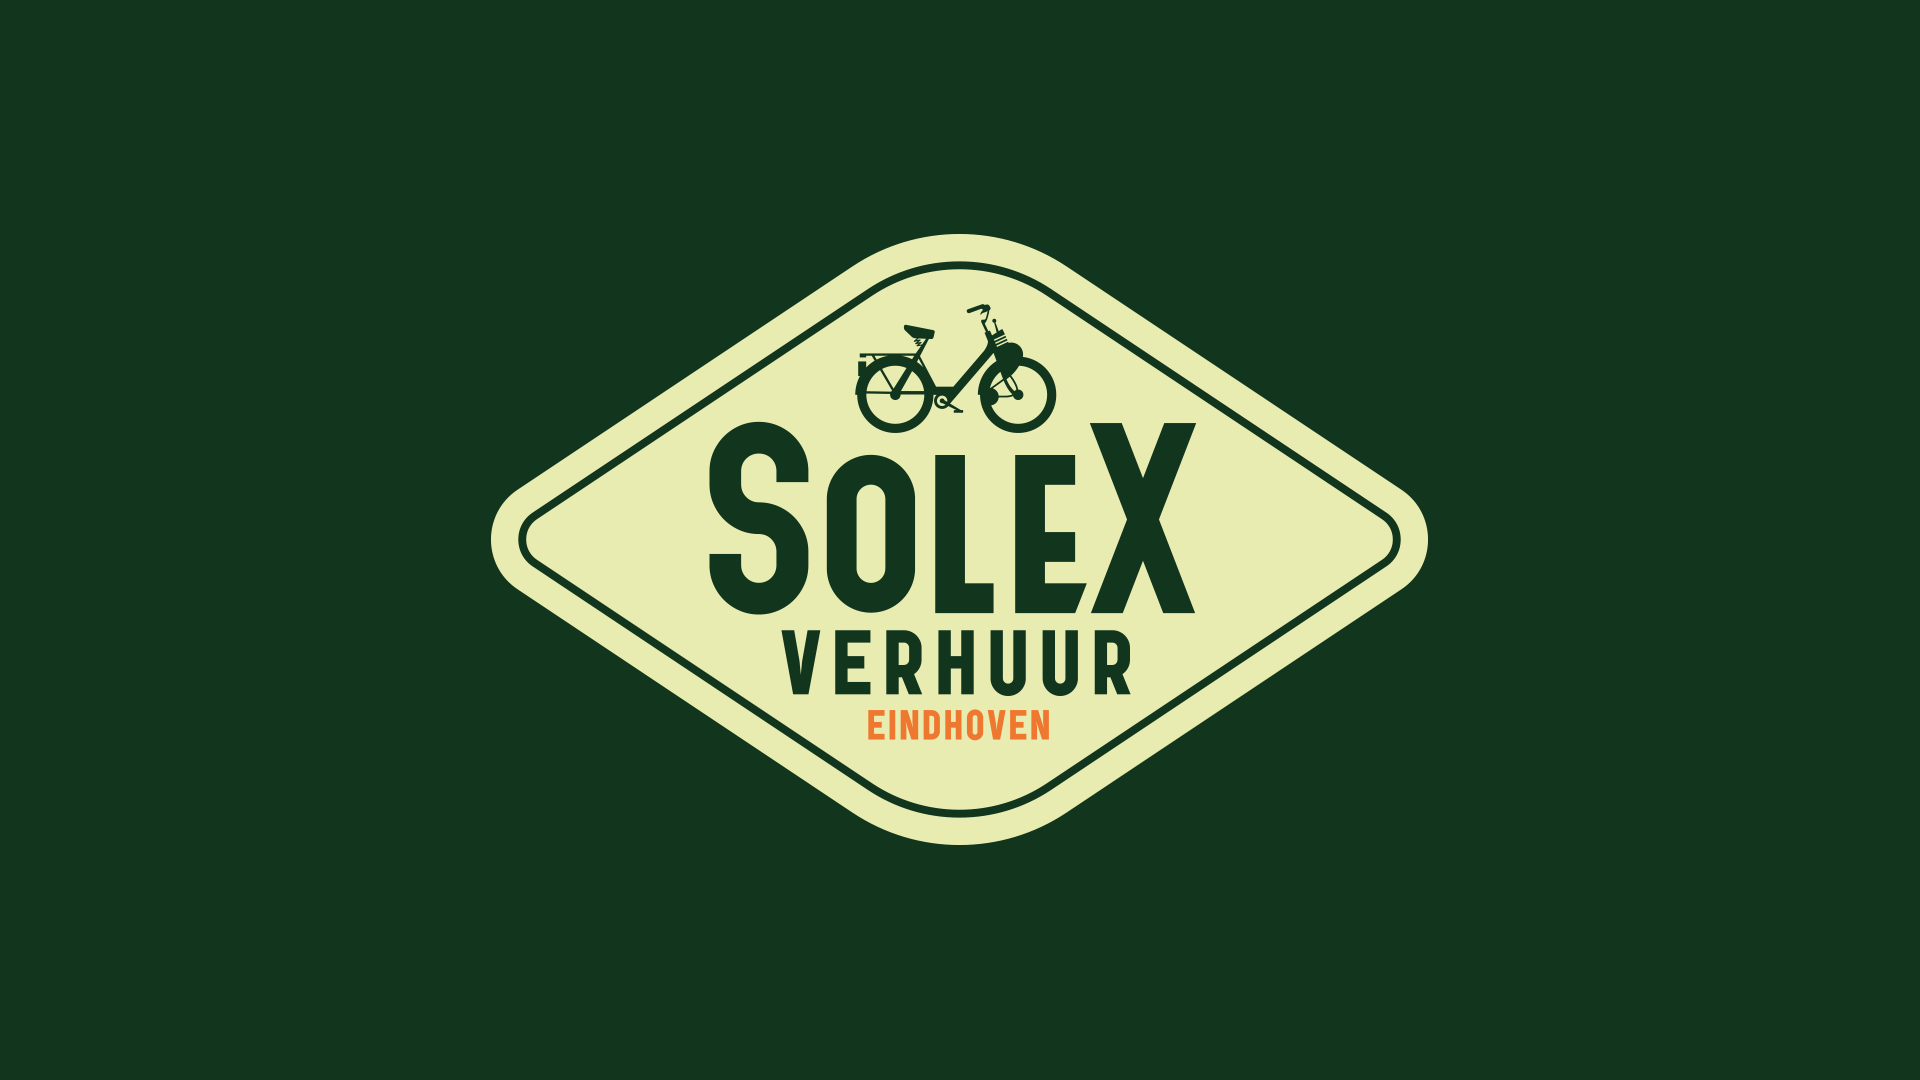 Solex-verhuur_logo